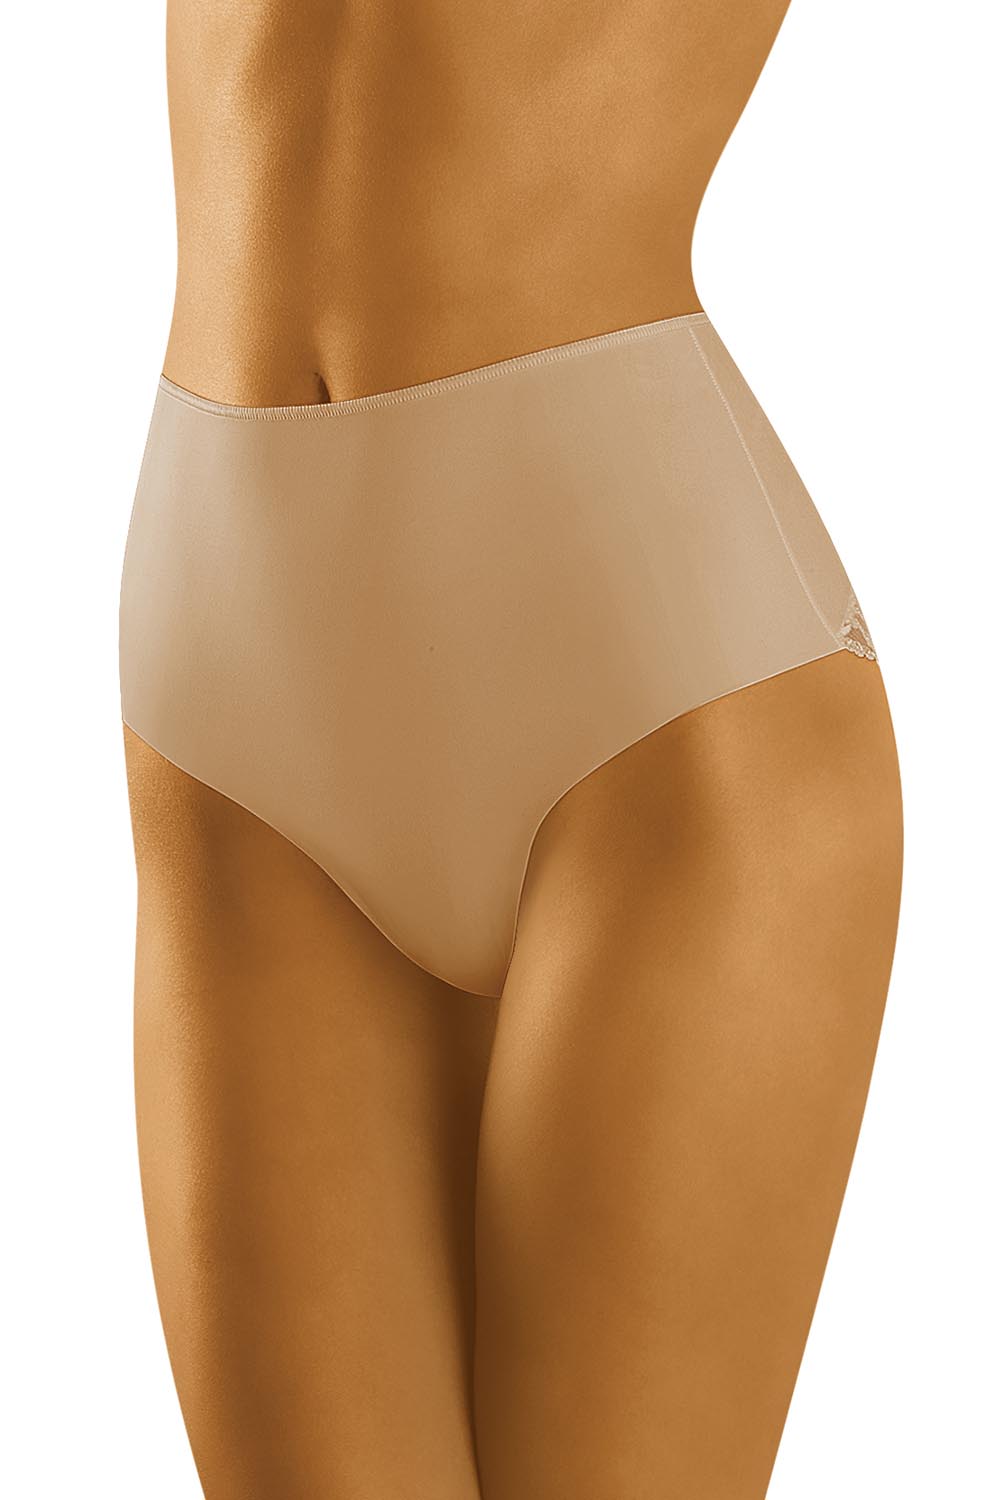 Panties model 127476 Wolbar beige Ladies